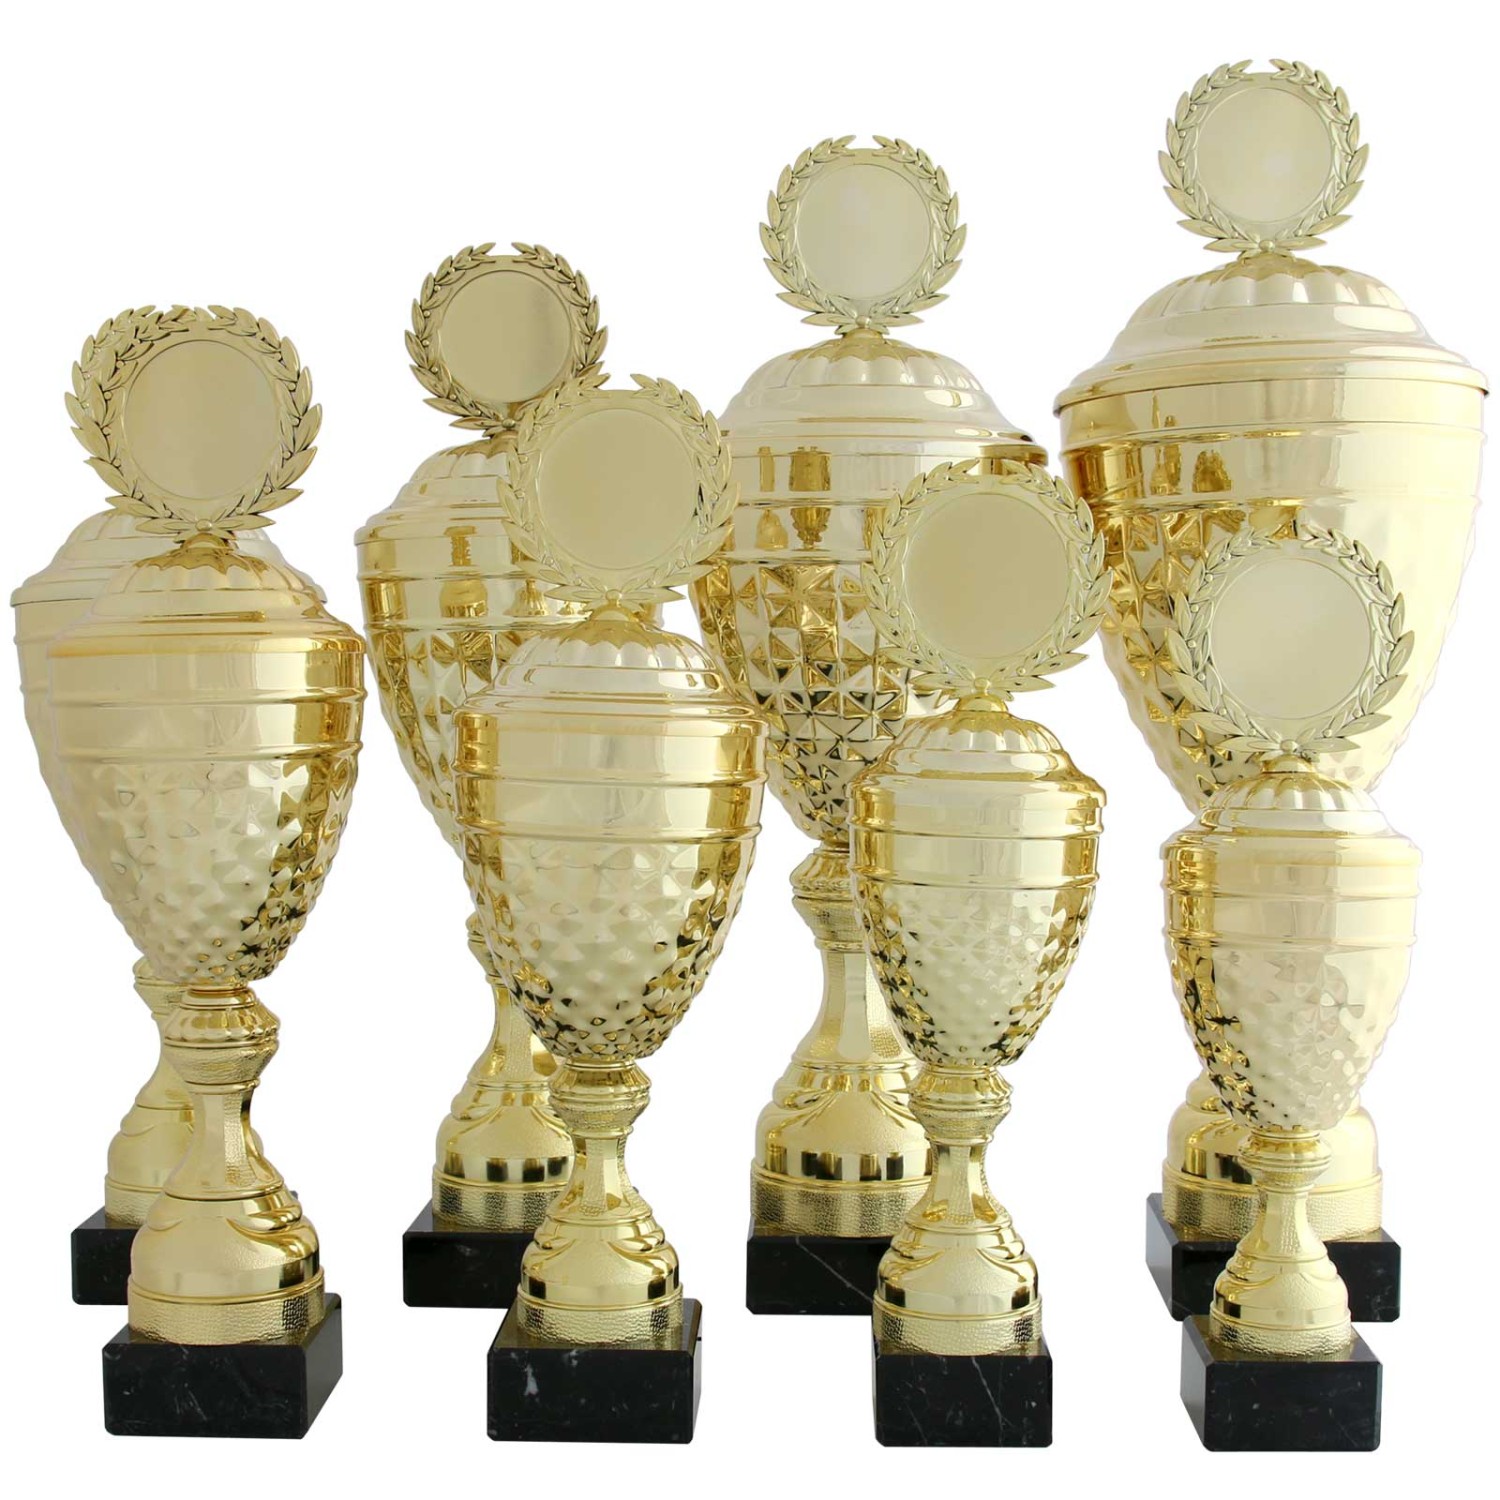 2. Foto Pokal ALBI Pokalset Metall gold mit Deckel 8 Größen mit Gravur (Höhe: 36 cm hoch)